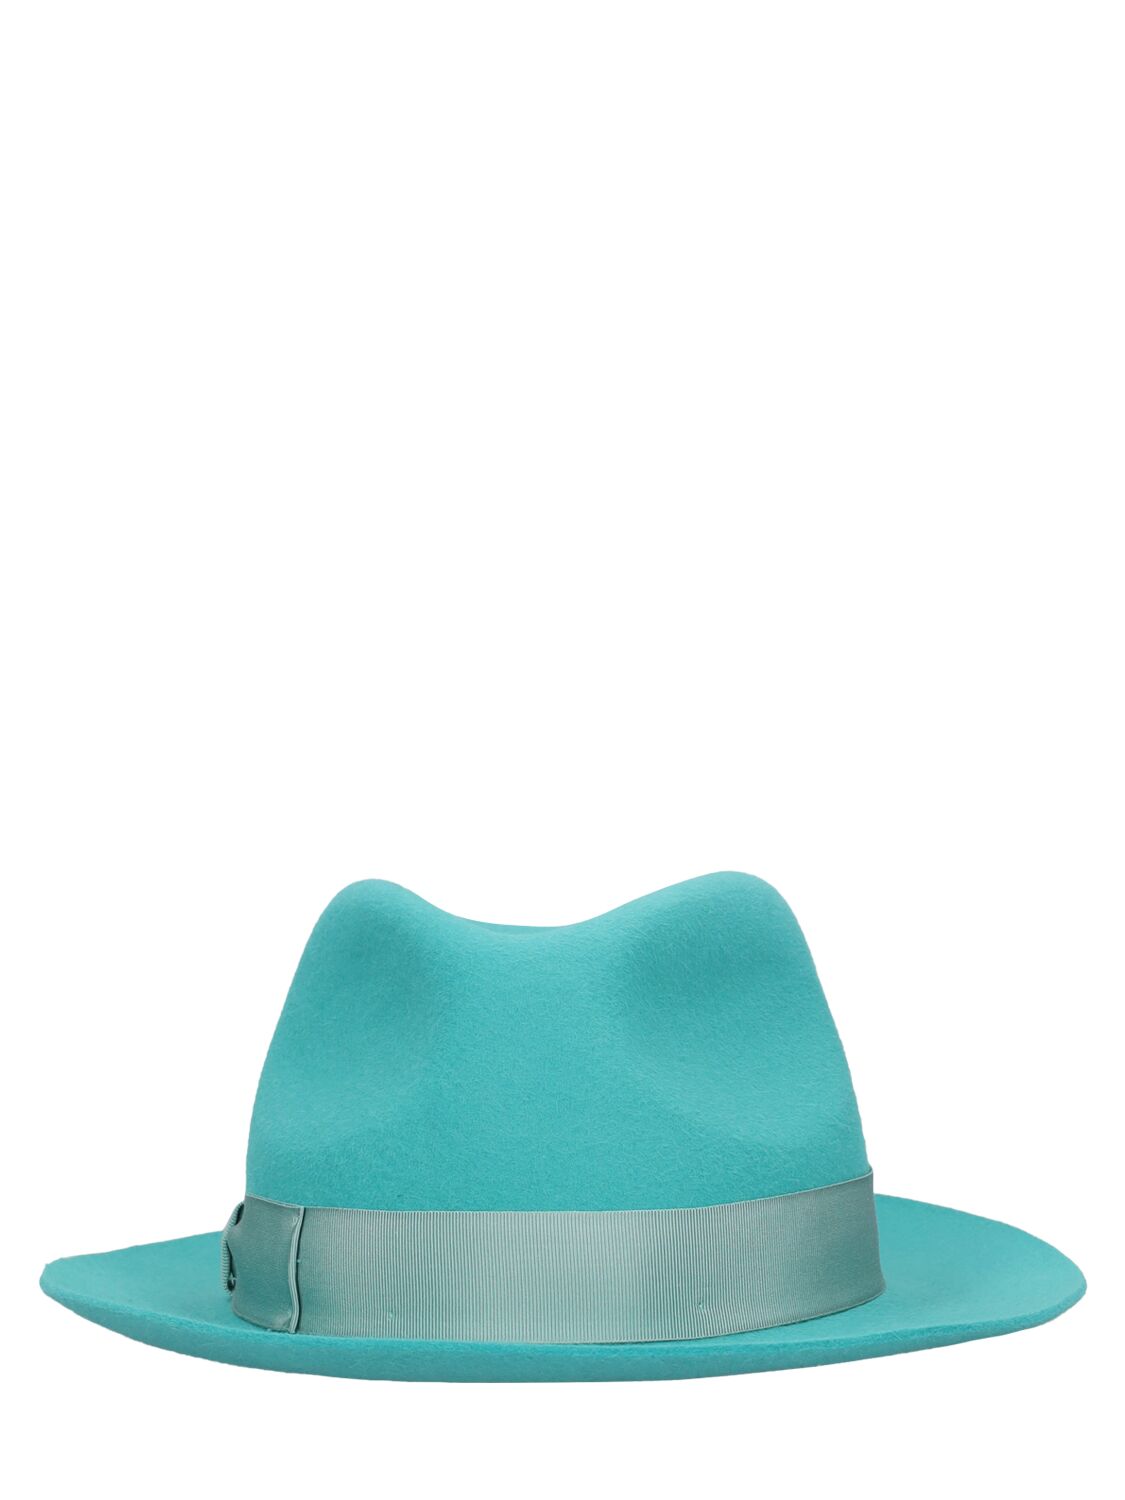 Borsalino Brushed Felt Fedora Hat In Blue